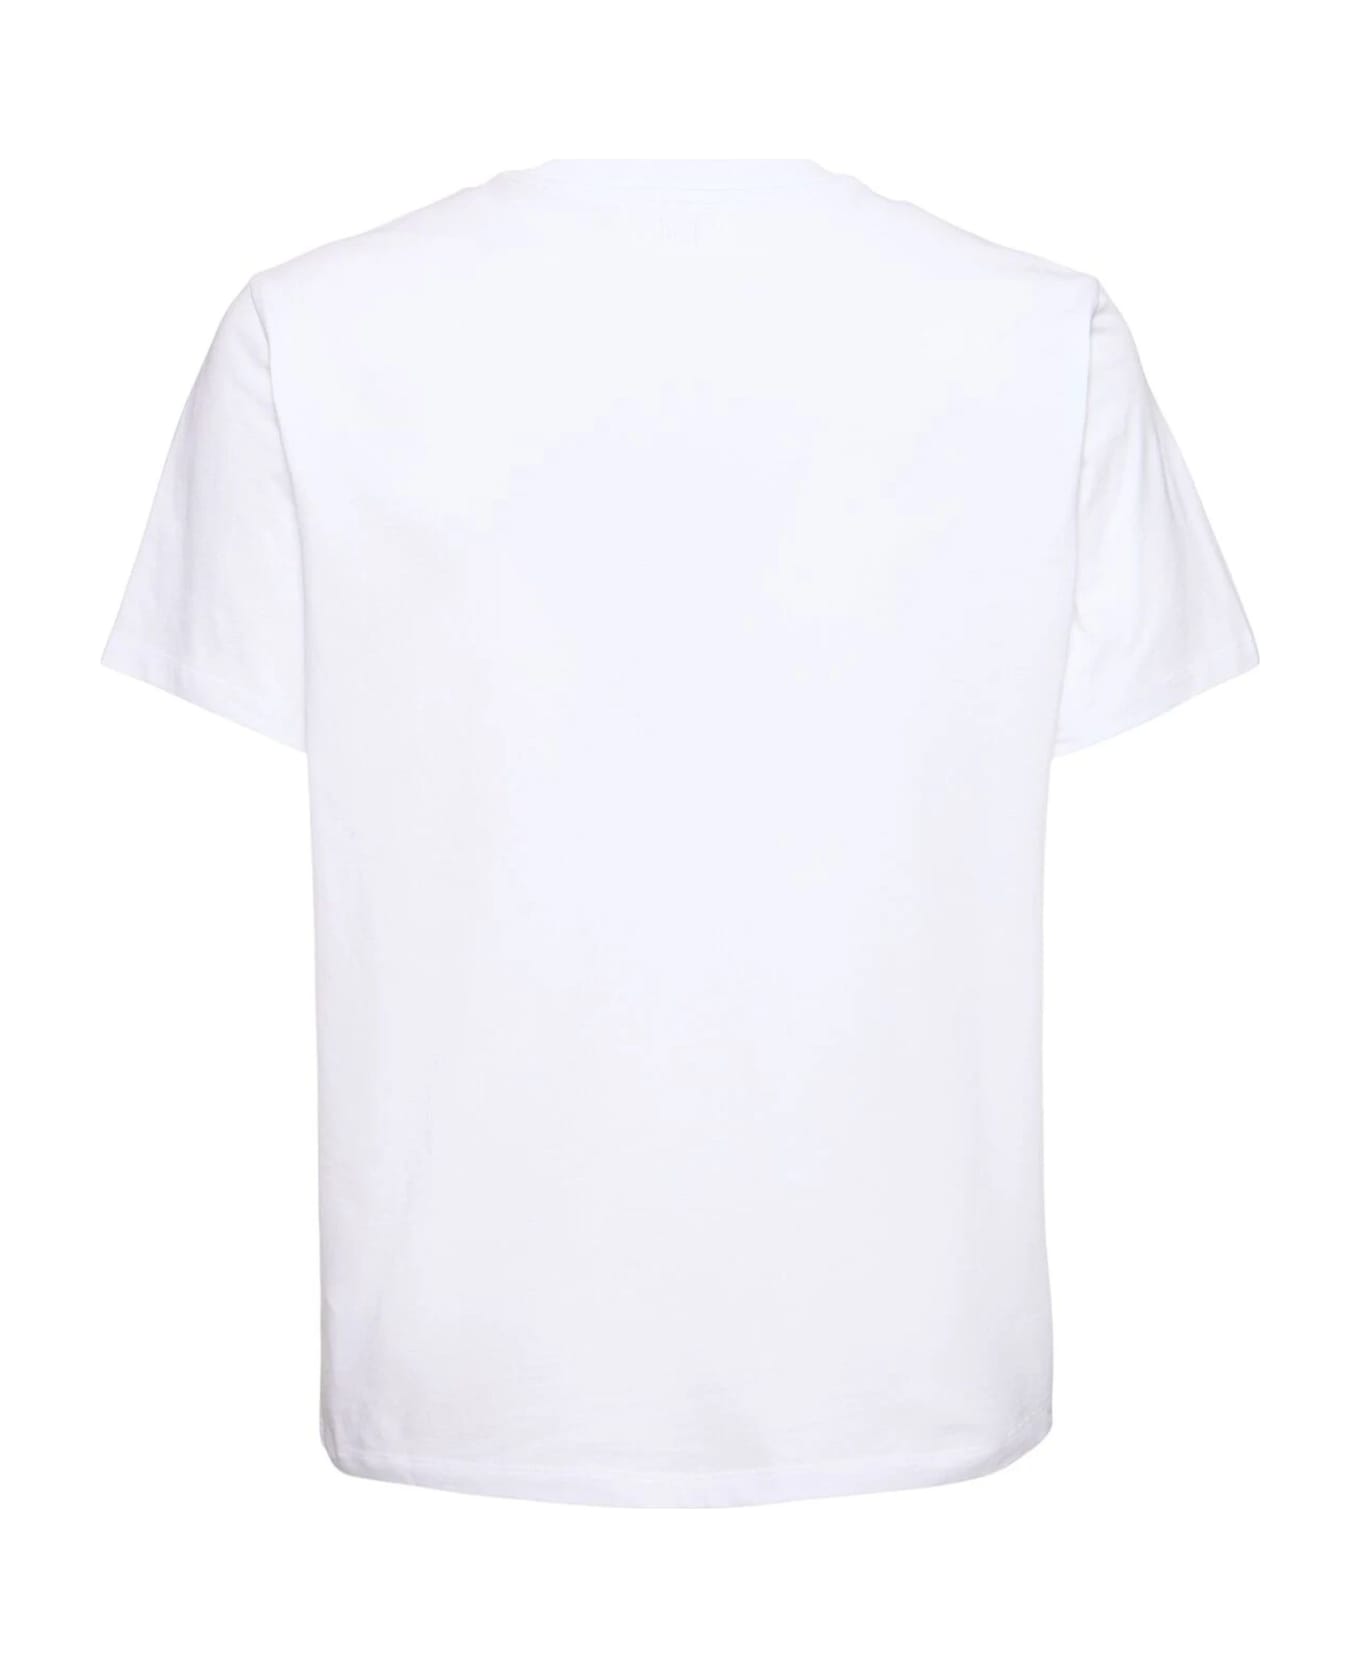 Ami Alexandre Mattiussi Ami T-shirts And Polos White - White シャツ